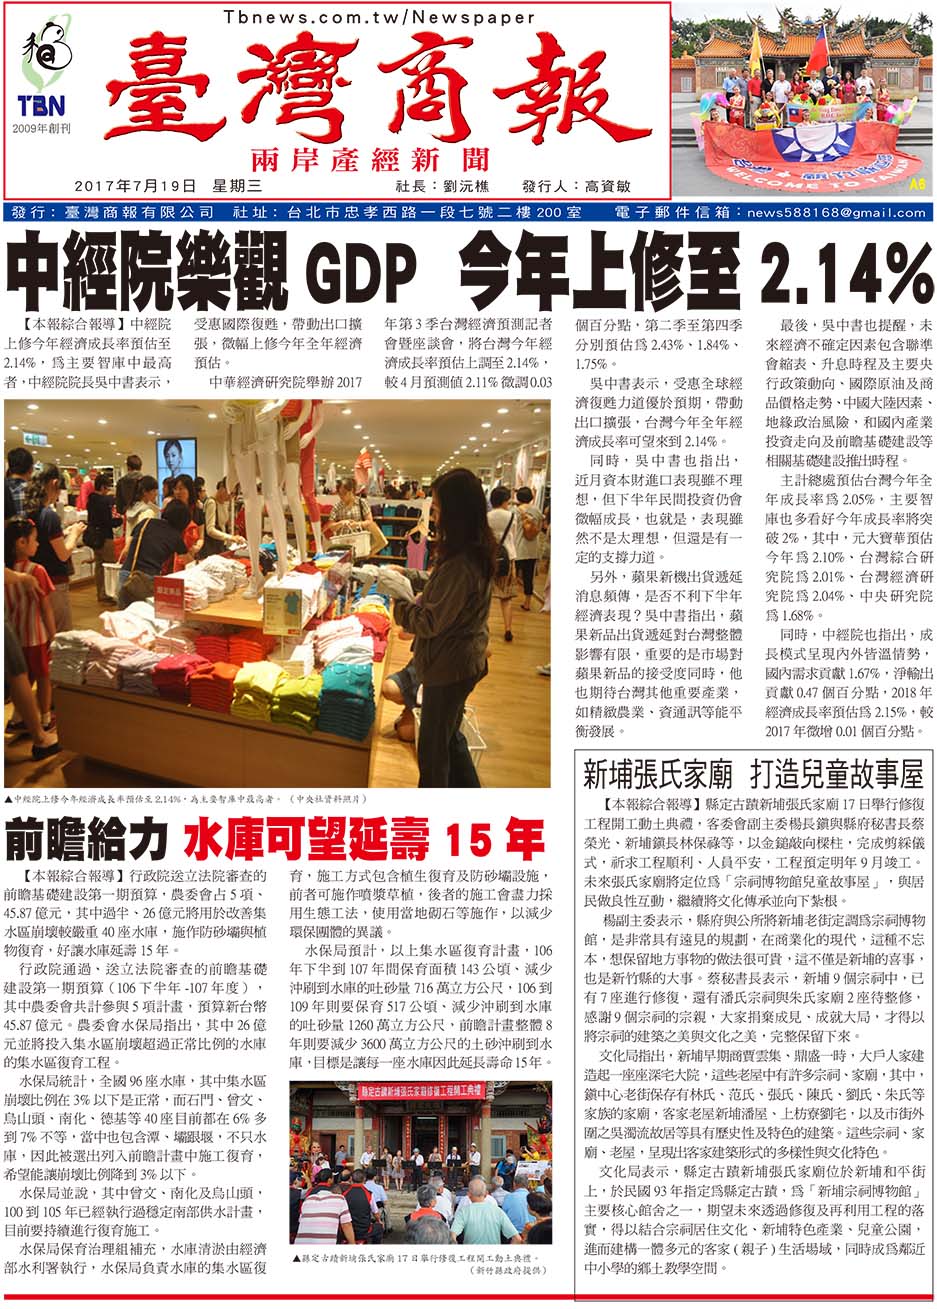 中經院樂觀 GDP 今年上修至 2.14%